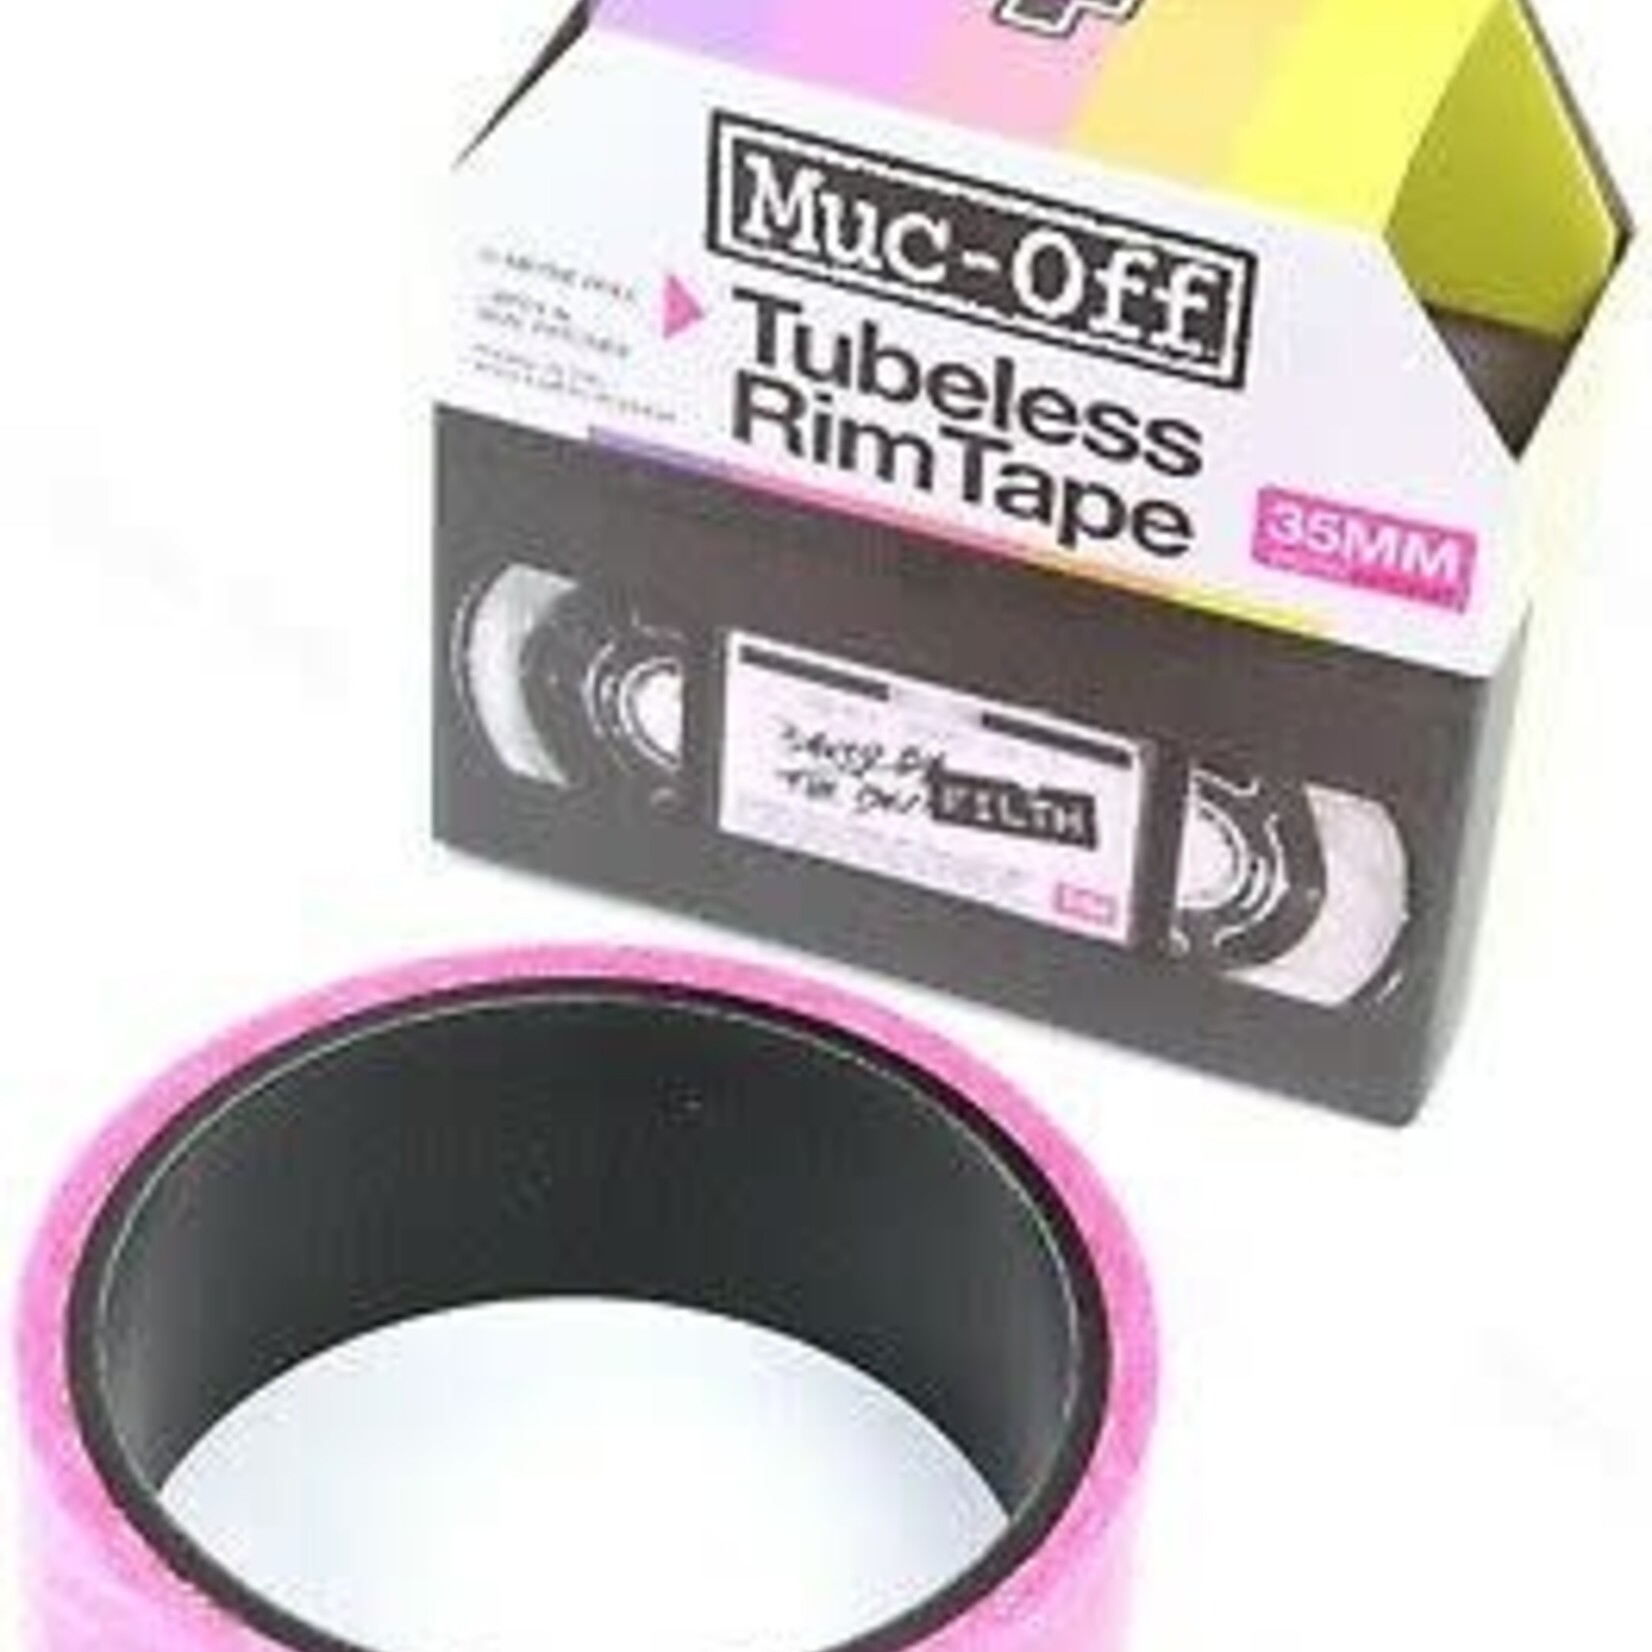 Muc-Off Muc-Off, Tubeless Rim Tape, 10m, 35mm